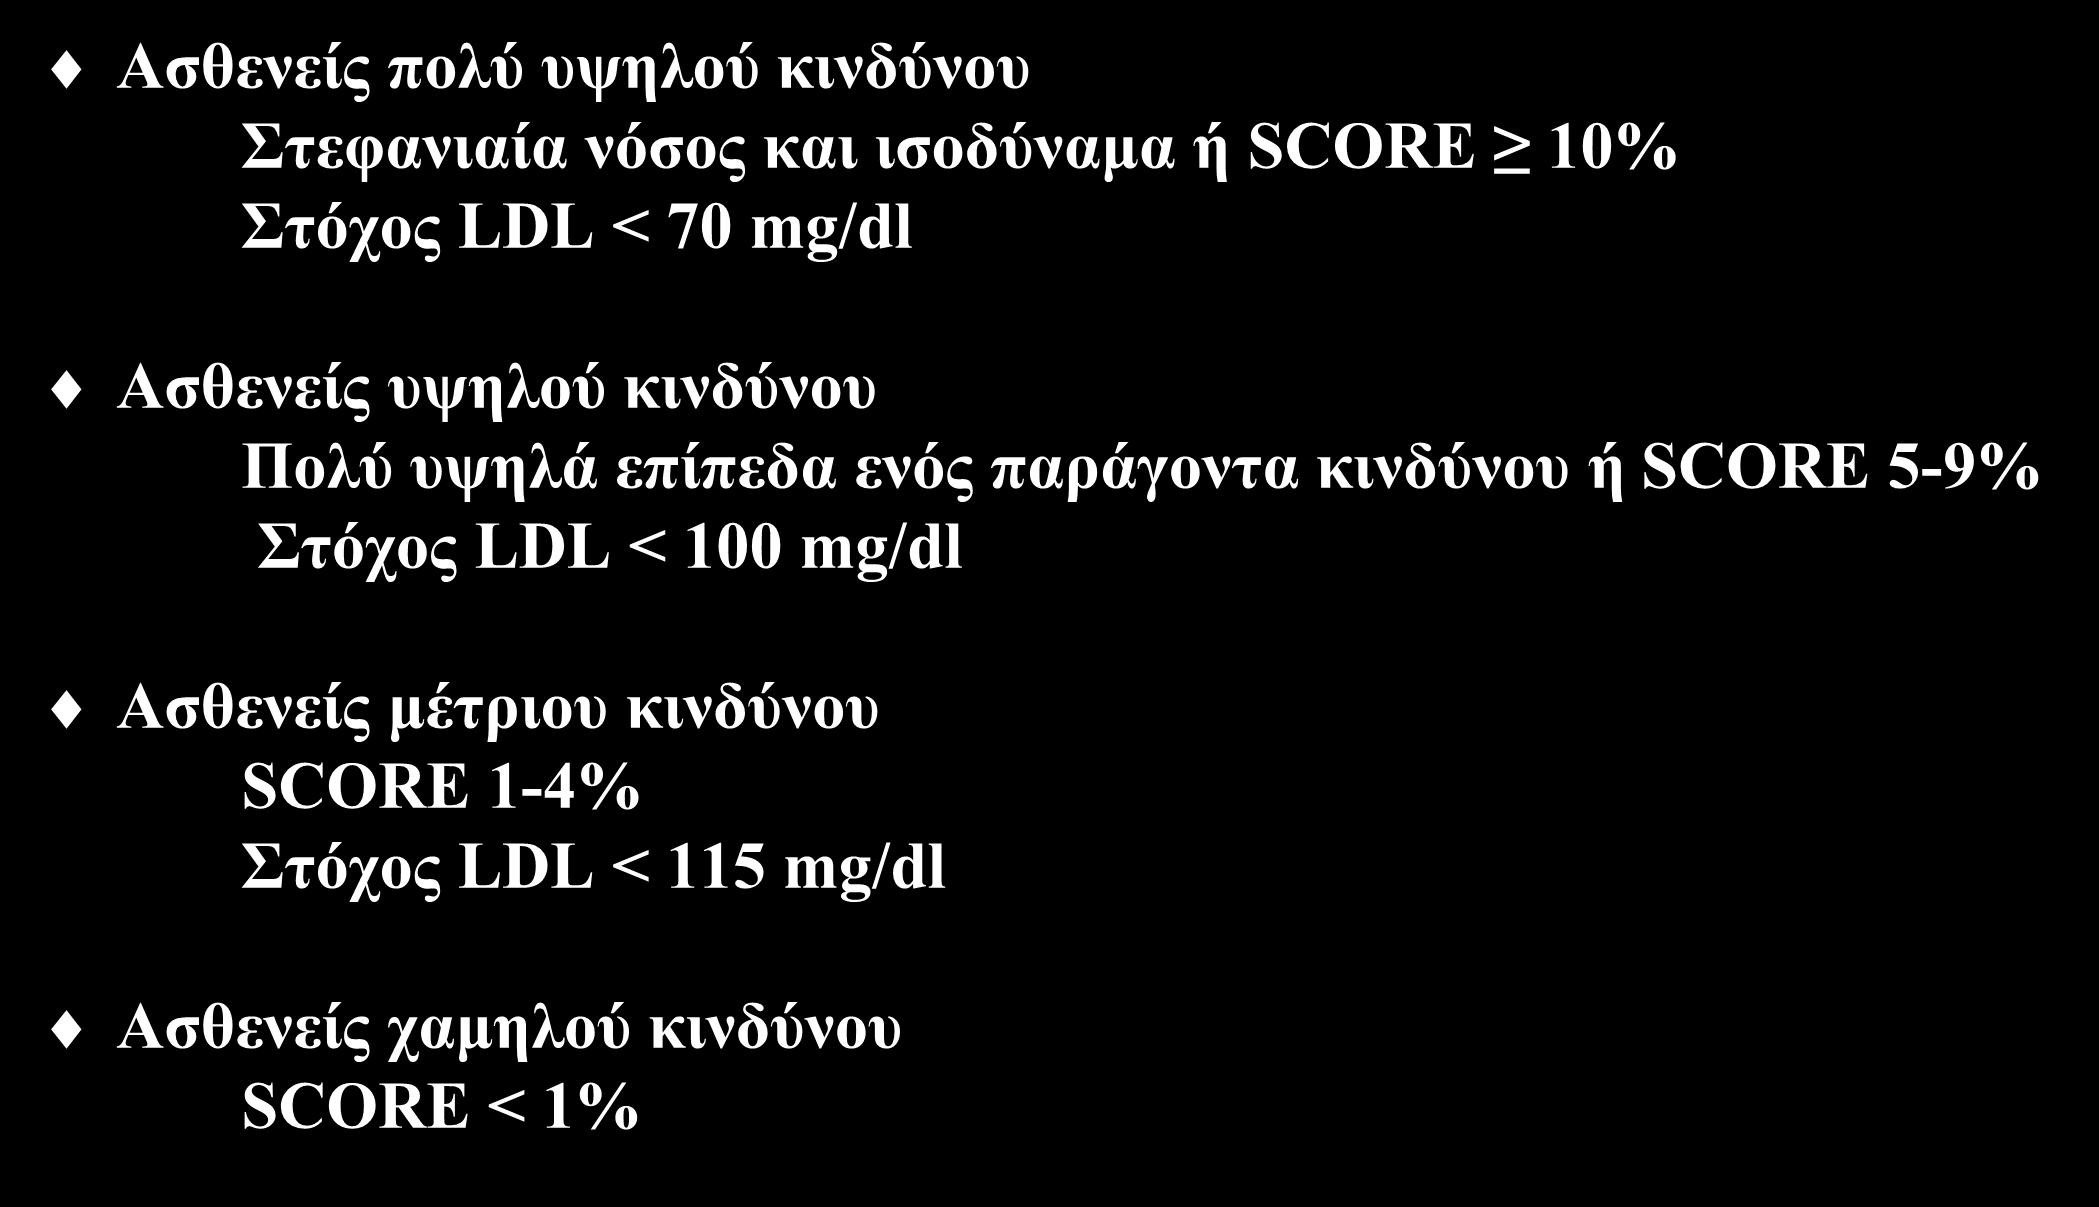 Διαστρωμάτωση καρδιαγγειακού κινδύνου και στόχος LDL Ασθενείς πολύ υψηλού κινδύνου Στεφανιαία νόσος και ισοδύναμα ή SCORE 10% Στόχος LDL < 70 mg/dl Ασθενείς υψηλού κινδύνου Πολύ υψηλά